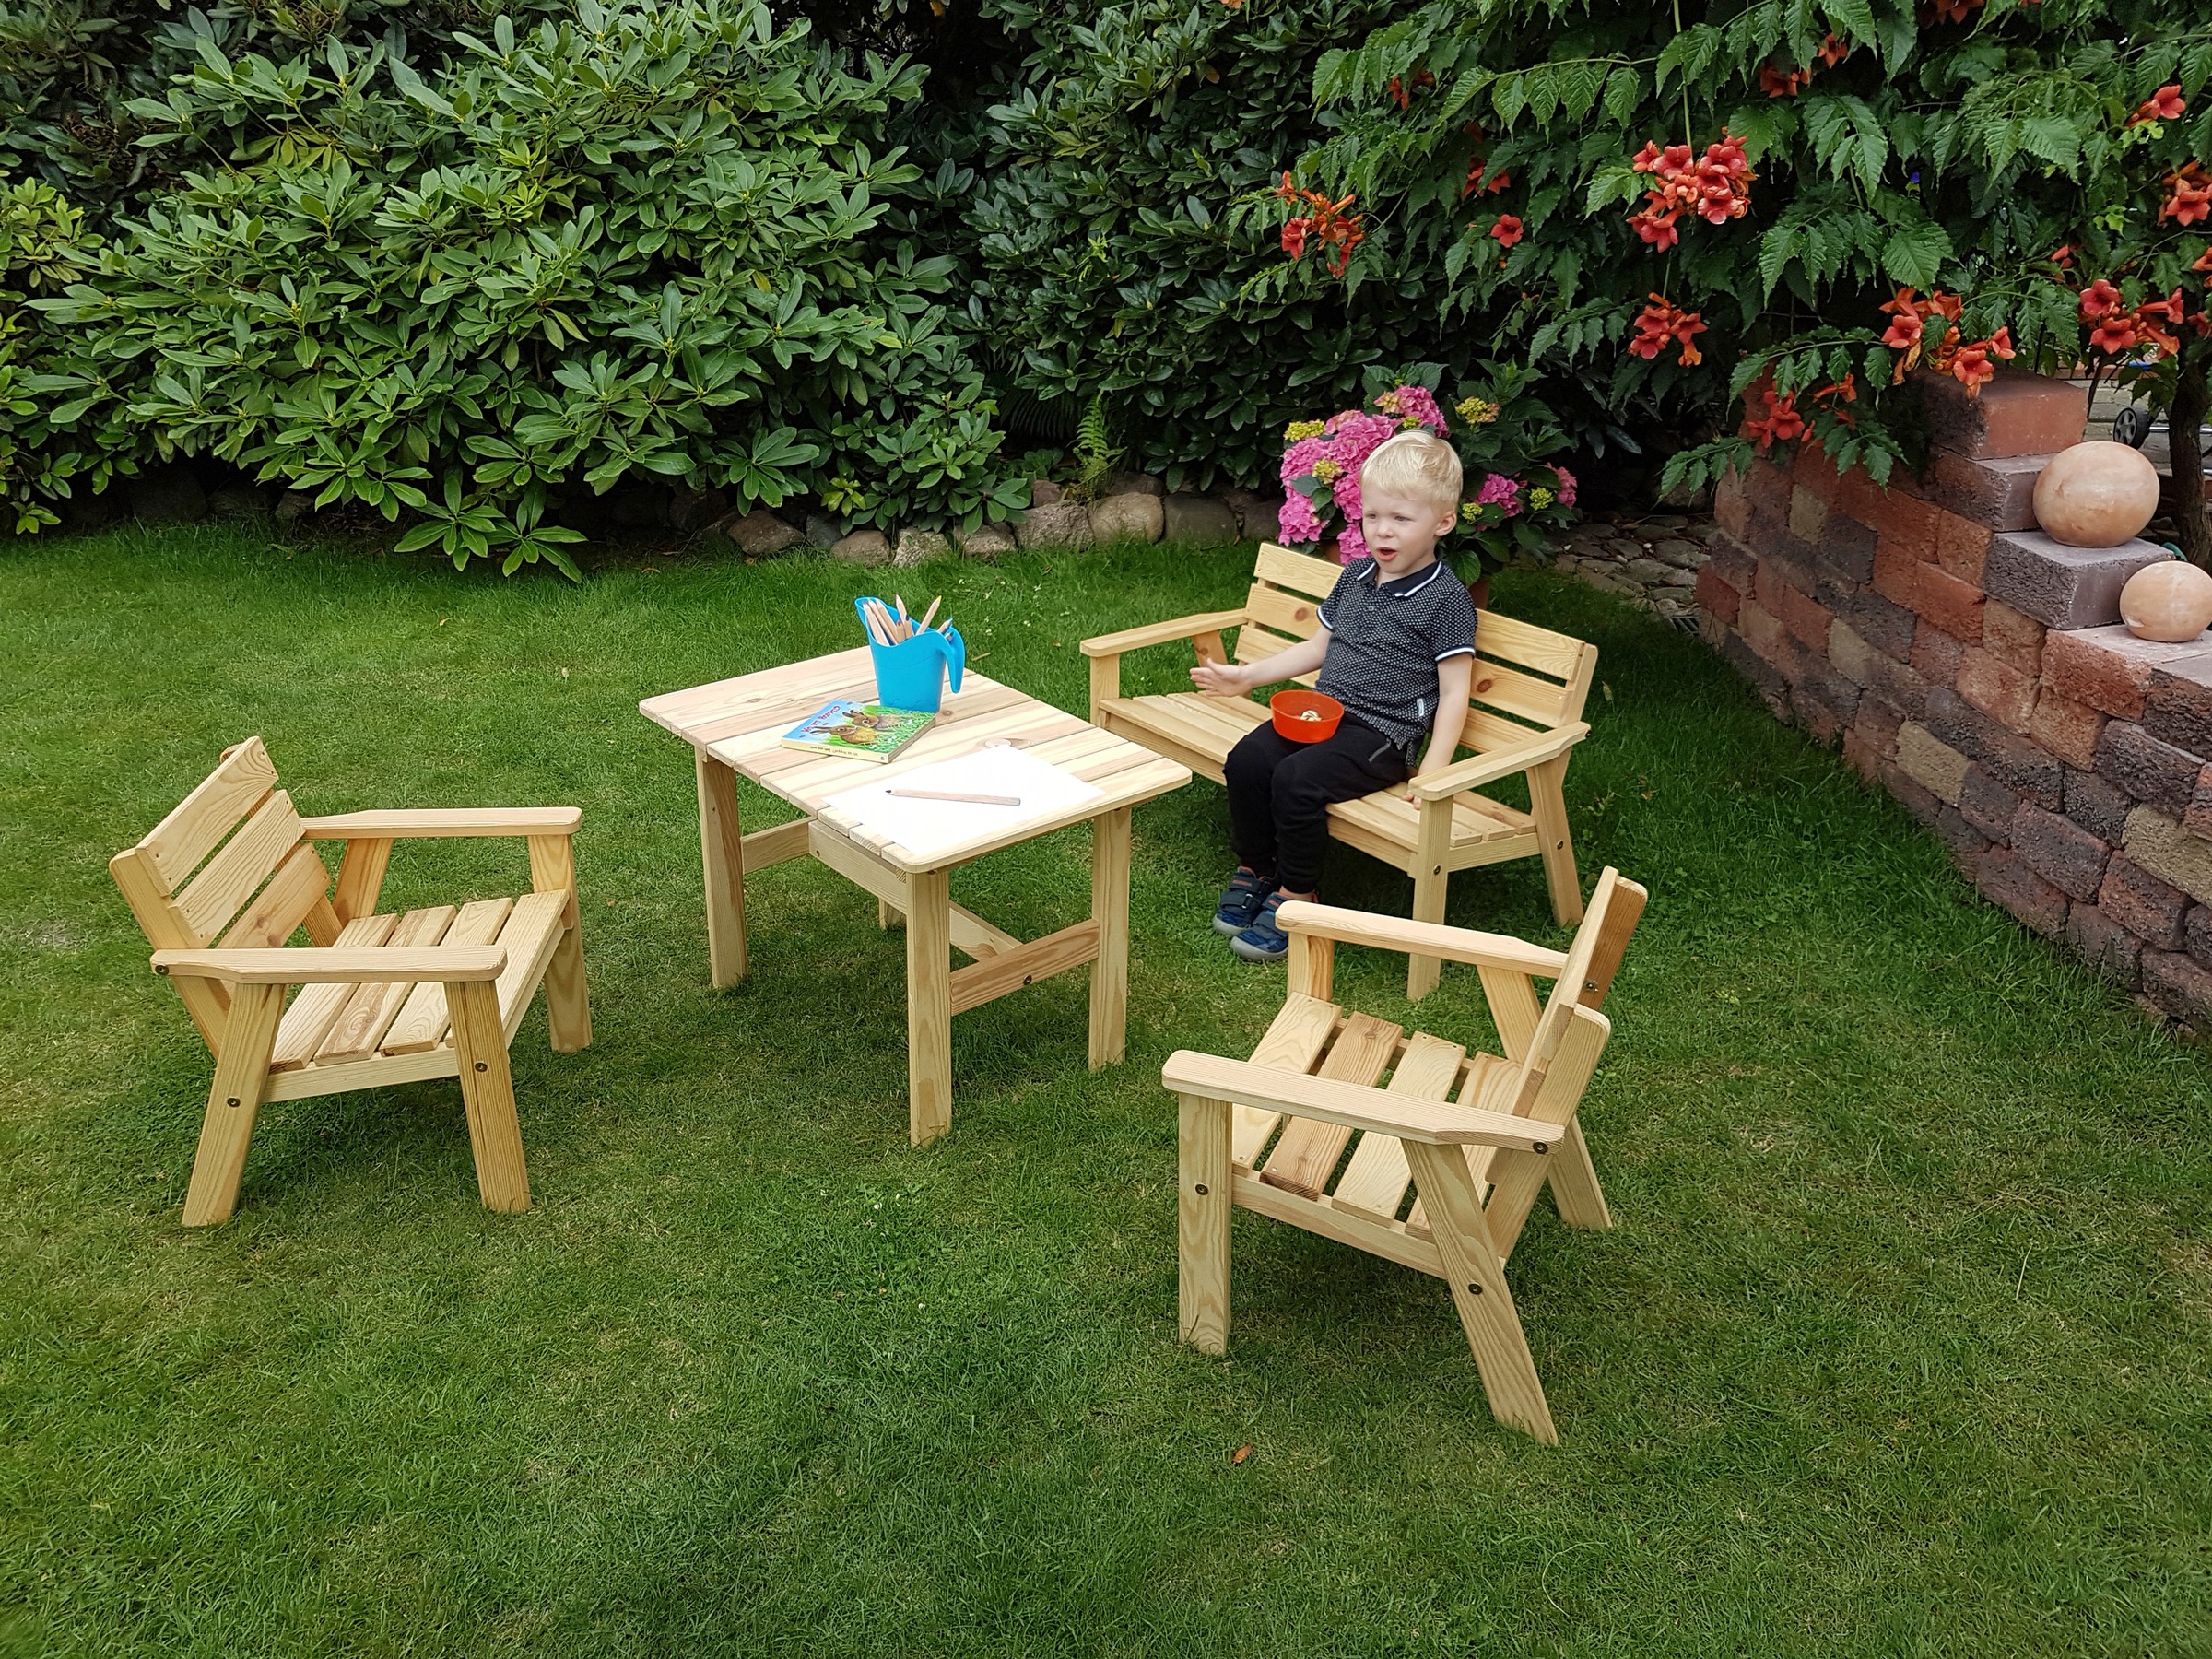 Garten-Kindersitzgruppe »Fehmarn«, (4 tlg.), aus Kiefernholz, 1 Bank, 1 Tisch, 2 Stühle